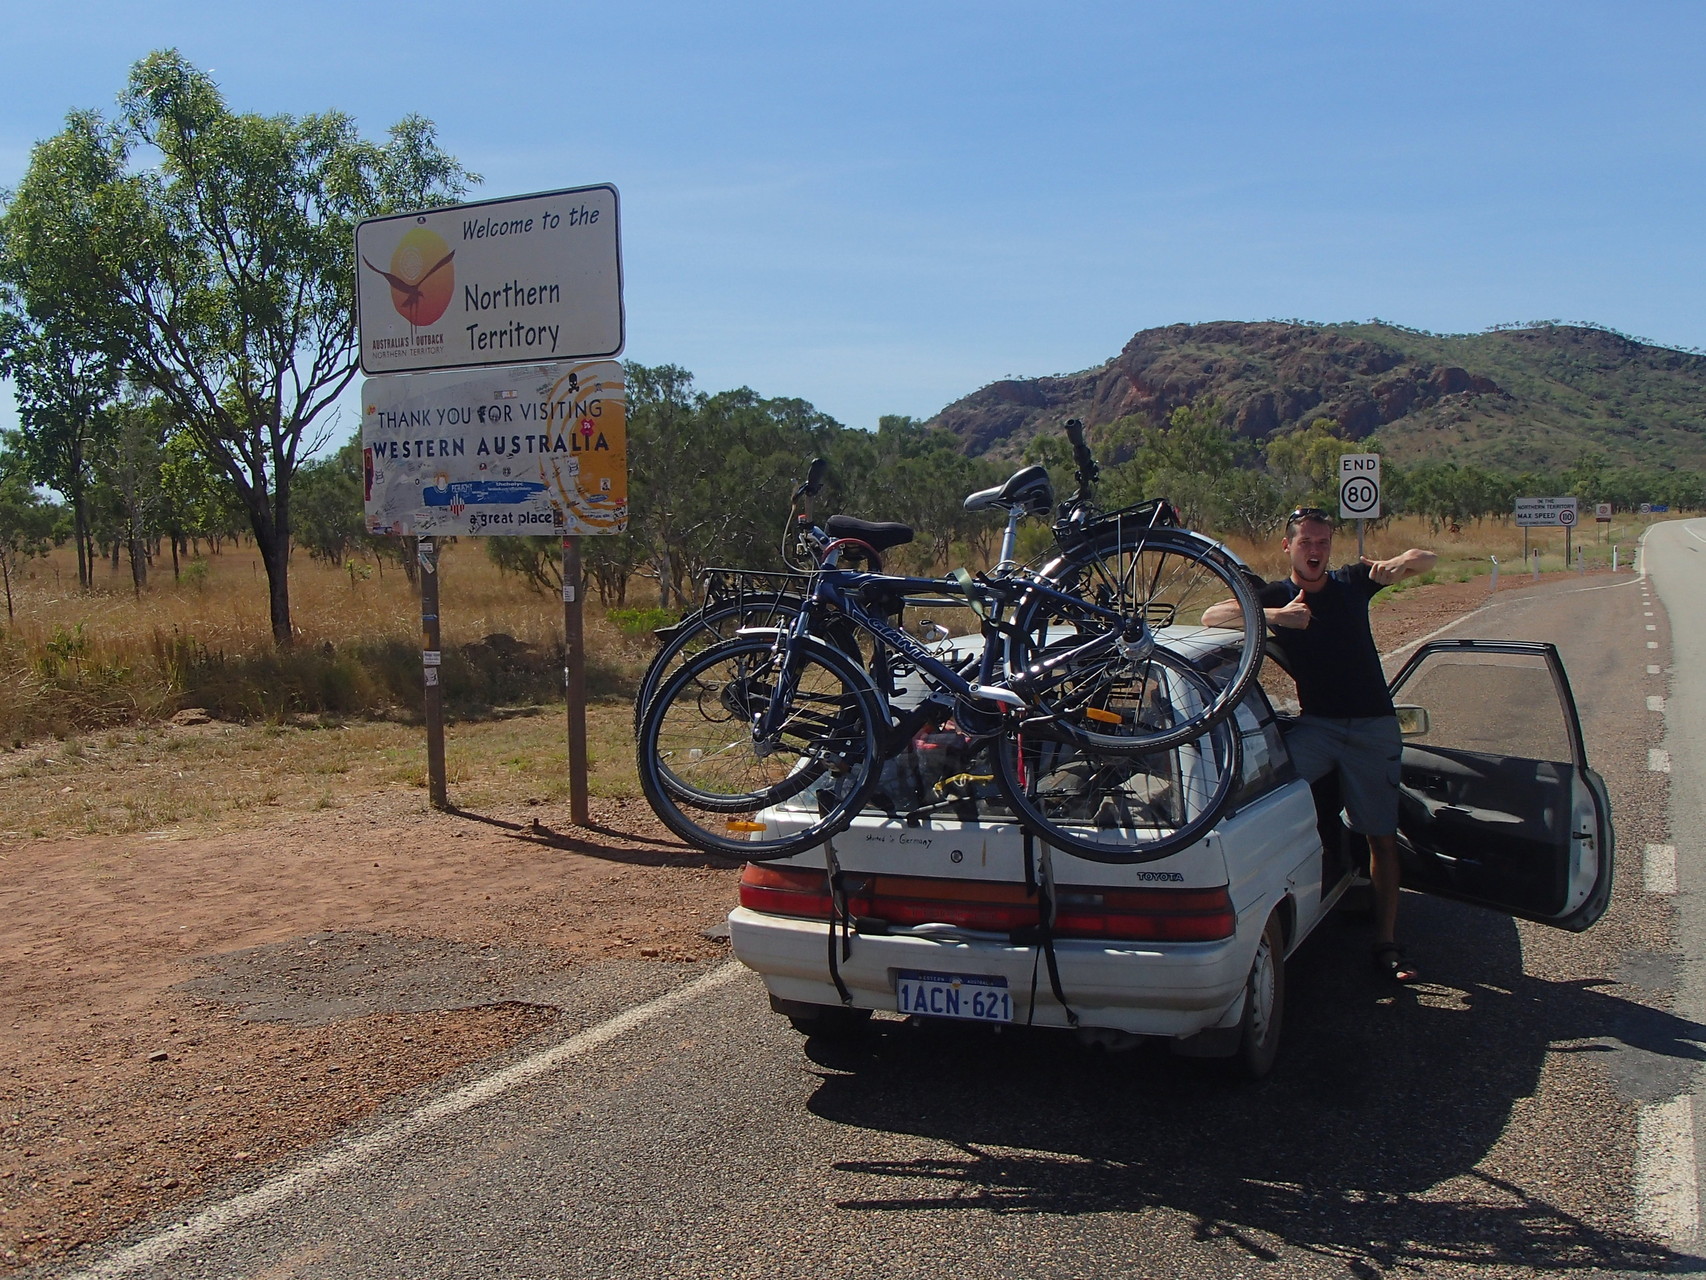 Wir verließen das lieb gewonnene Western Australia und setzten unser Abenteuer im neuen Bundesstaat, Northern Territory fort.